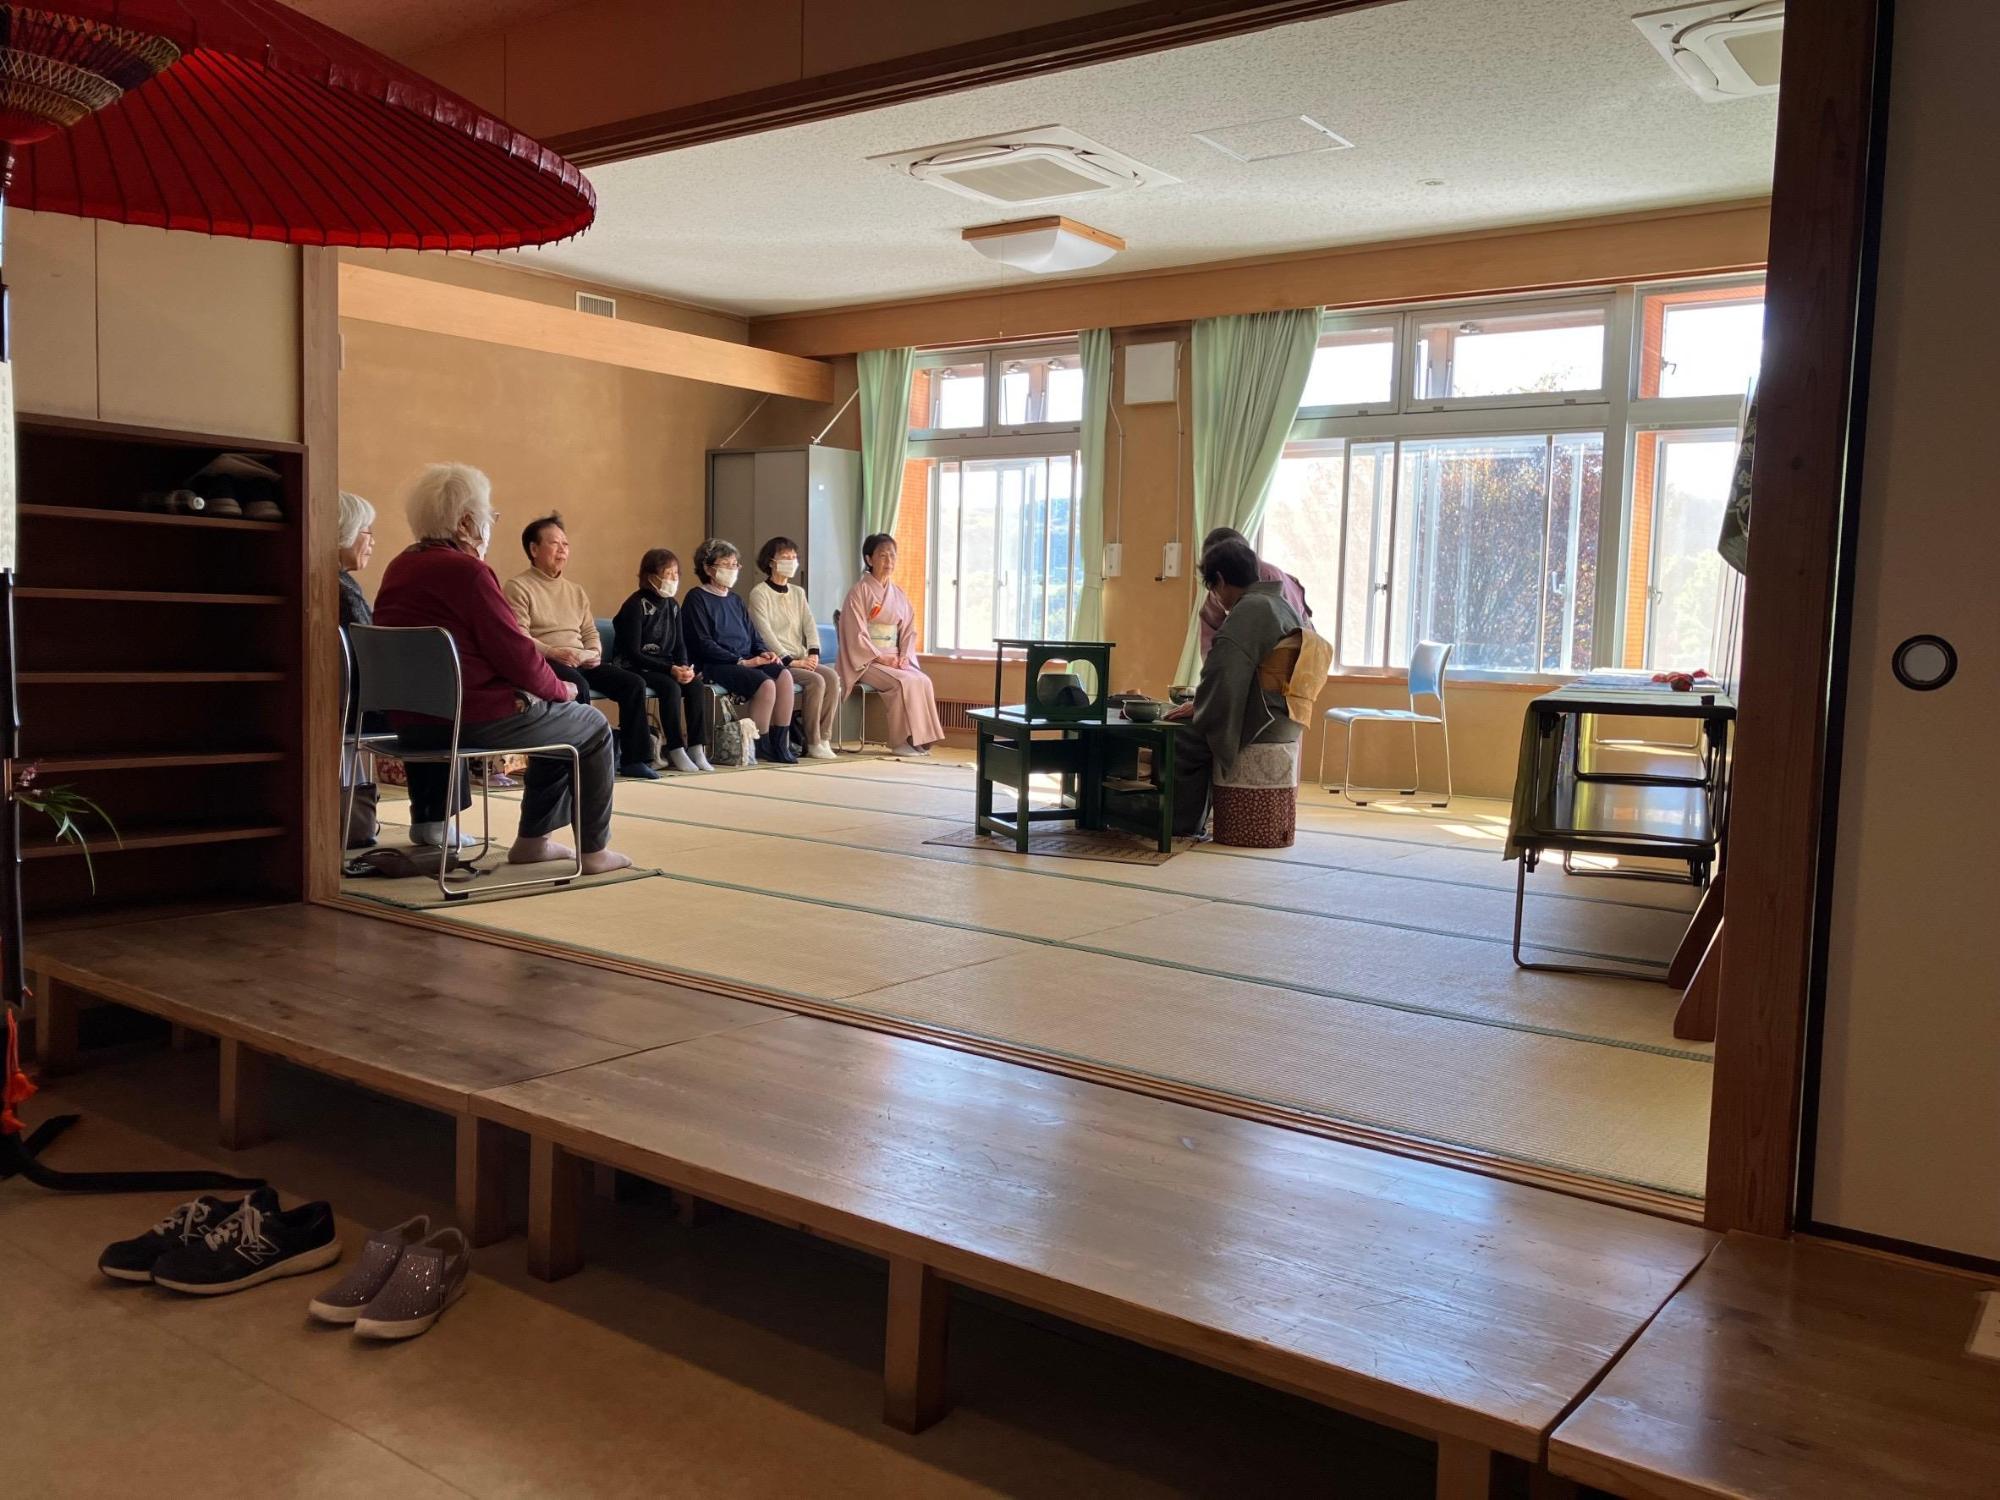 和室の入口には赤い大きな和傘。立礼式の茶席でおもてなしをしている様子。